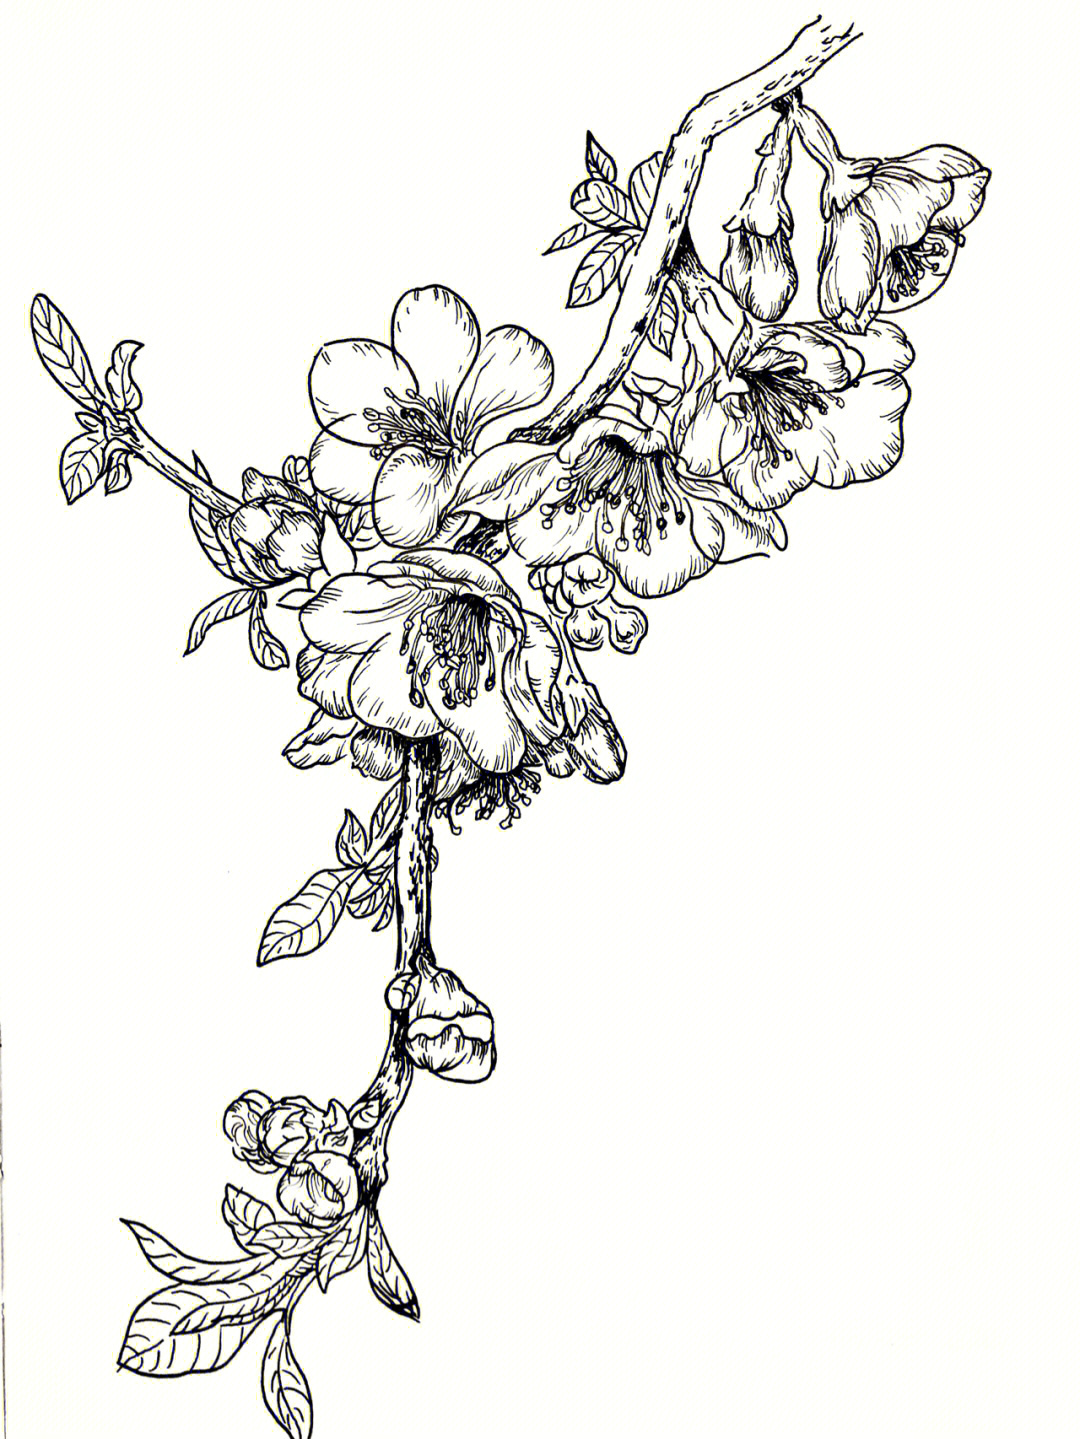 海棠花素描图片